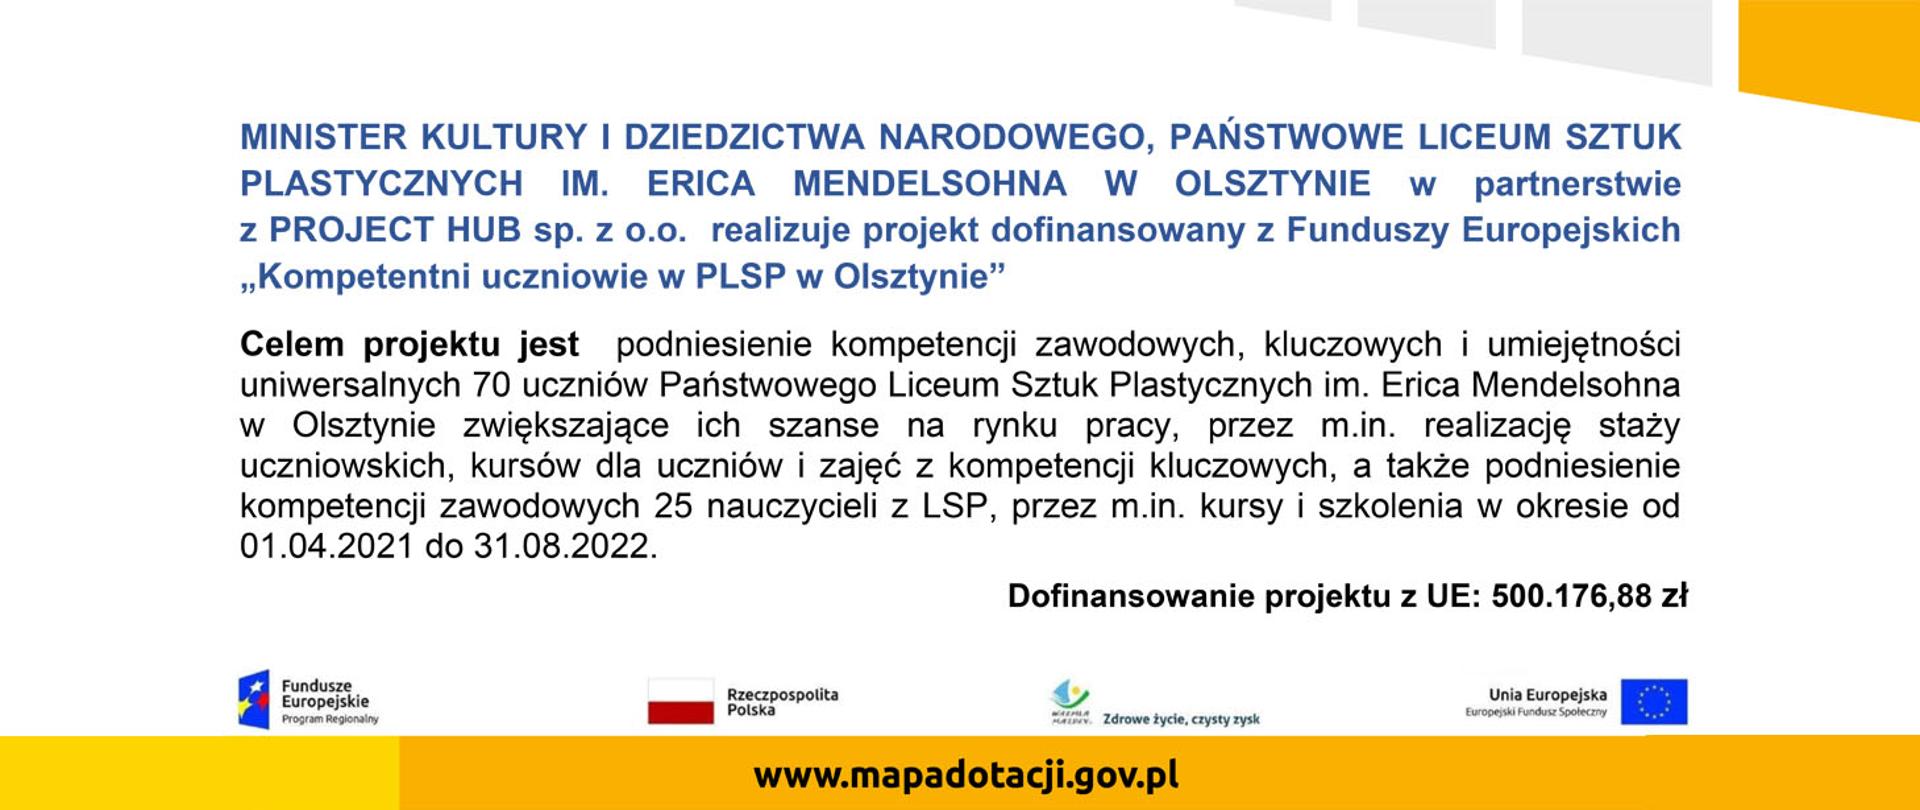 na białym te plakat Projektu Kompetentni uczniowie w PLSP w Olsztynie dofinansowanego z Funduszy Europejskich